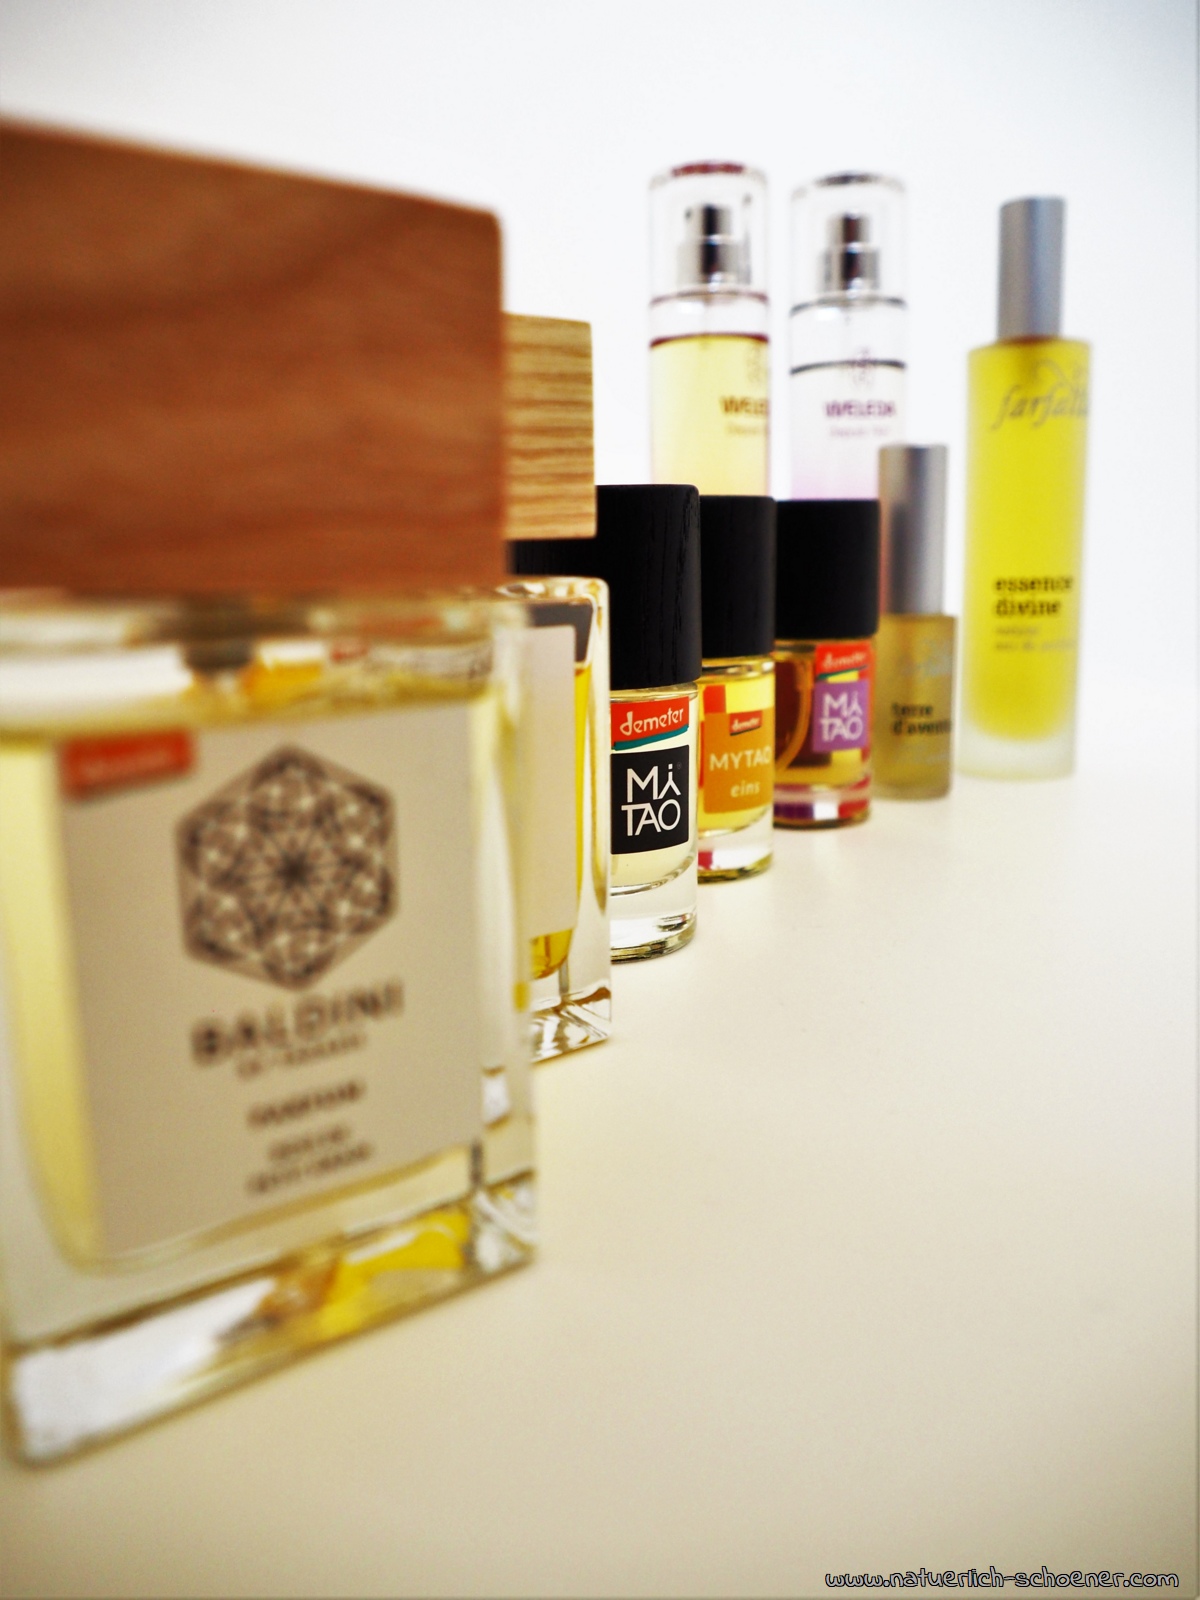 Naturparfüm - Vorteile gegenüber konventionellen Parfums